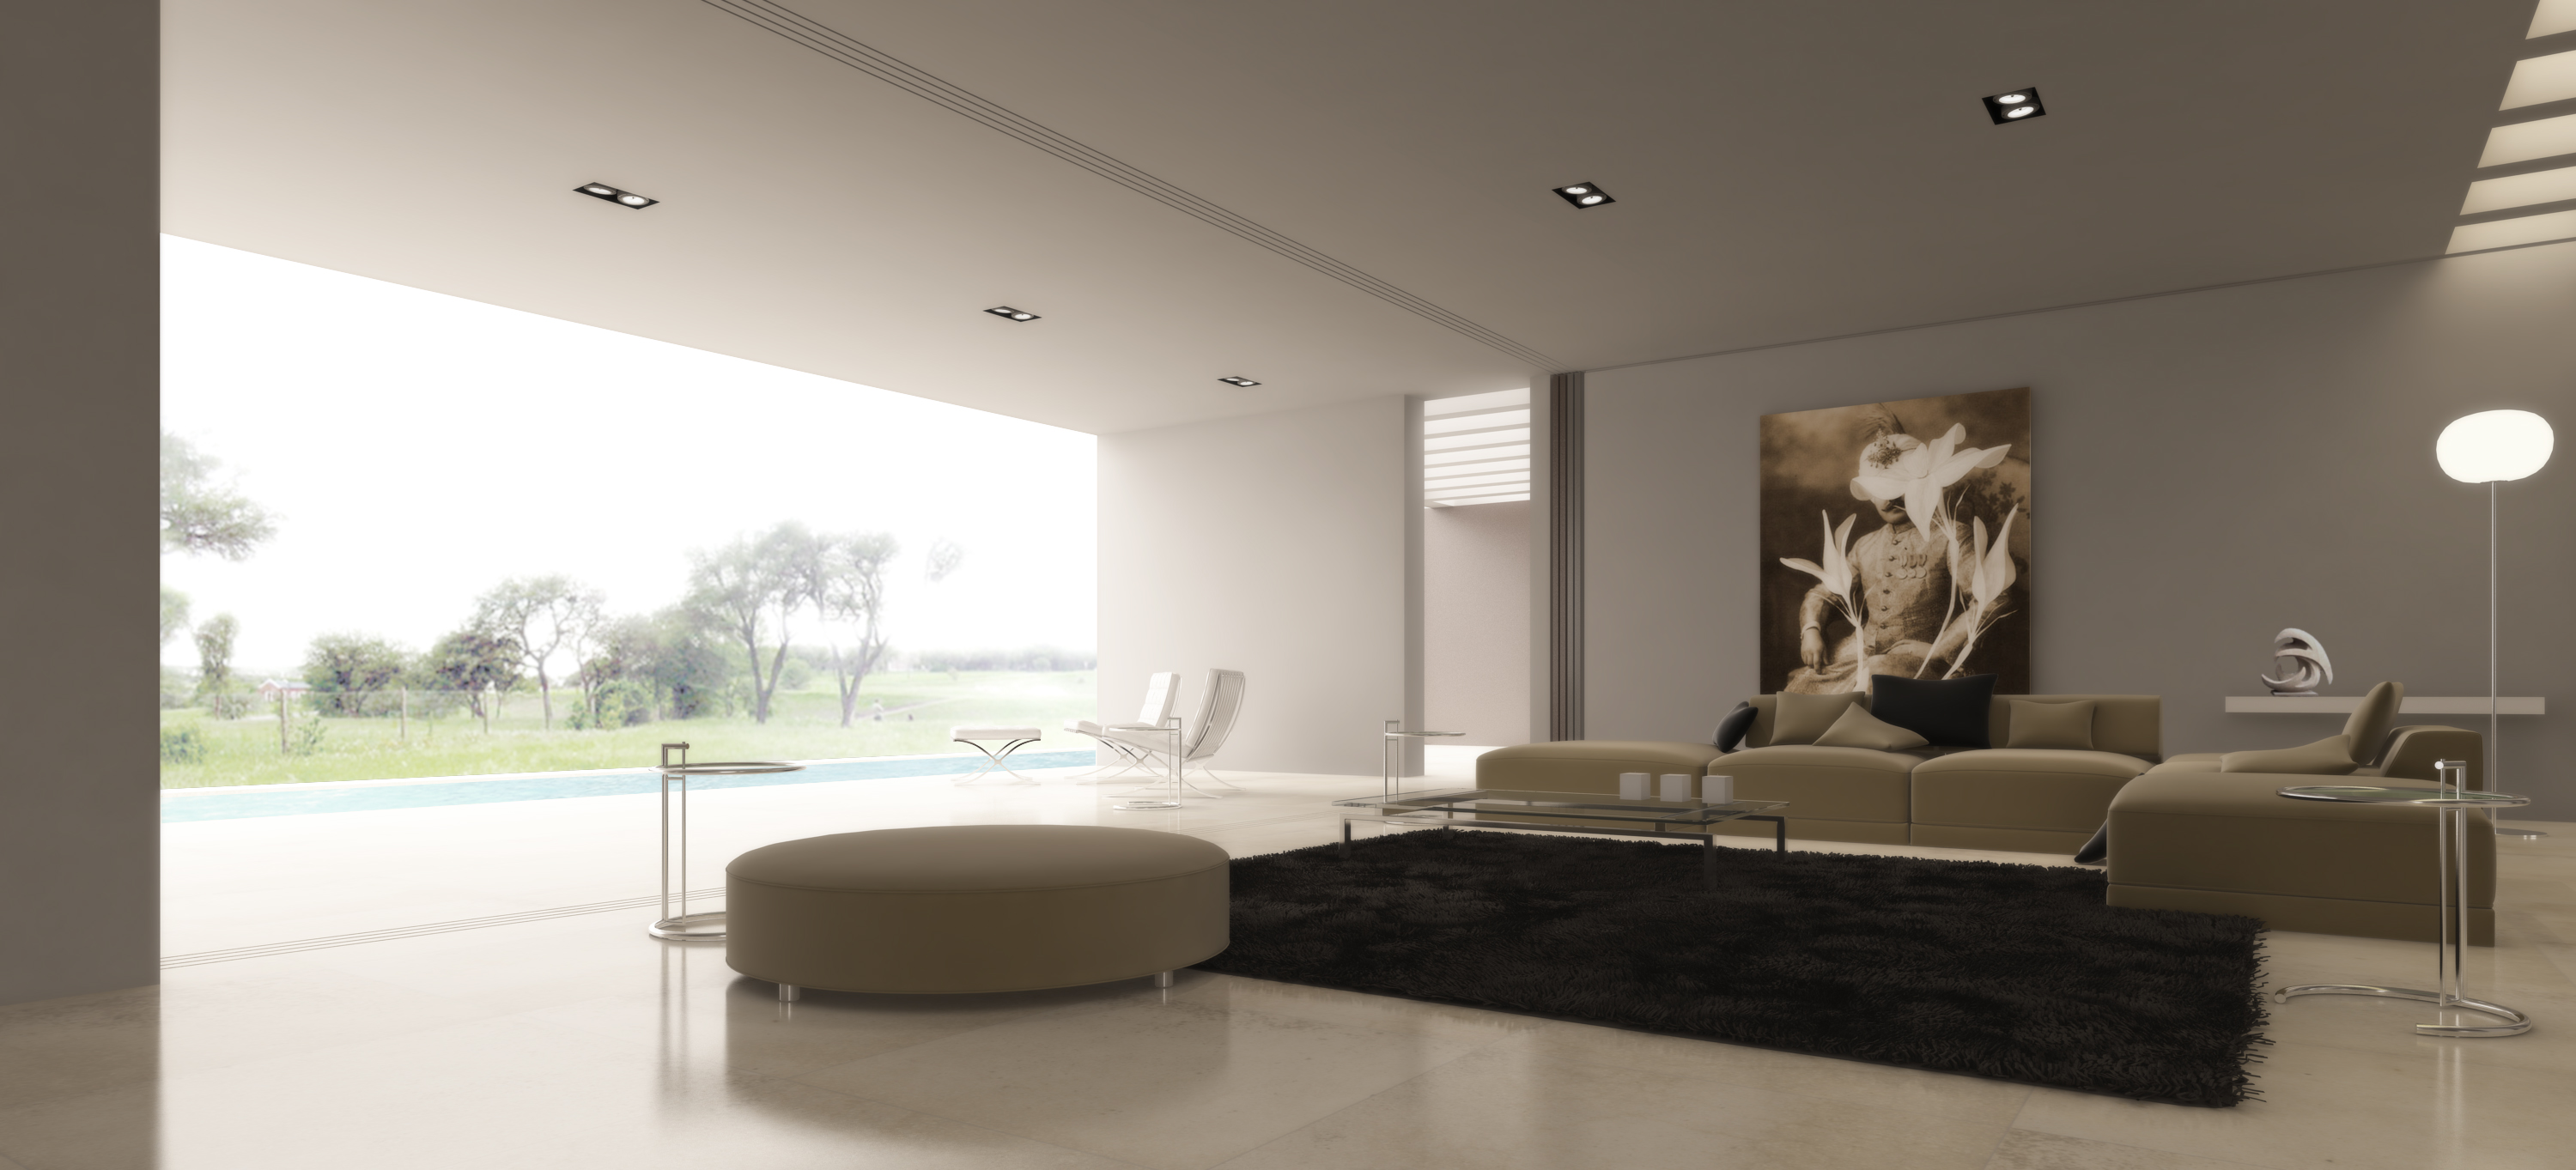 modrn living room 139 » Desain Ruang Keluarga Minimalis Modern